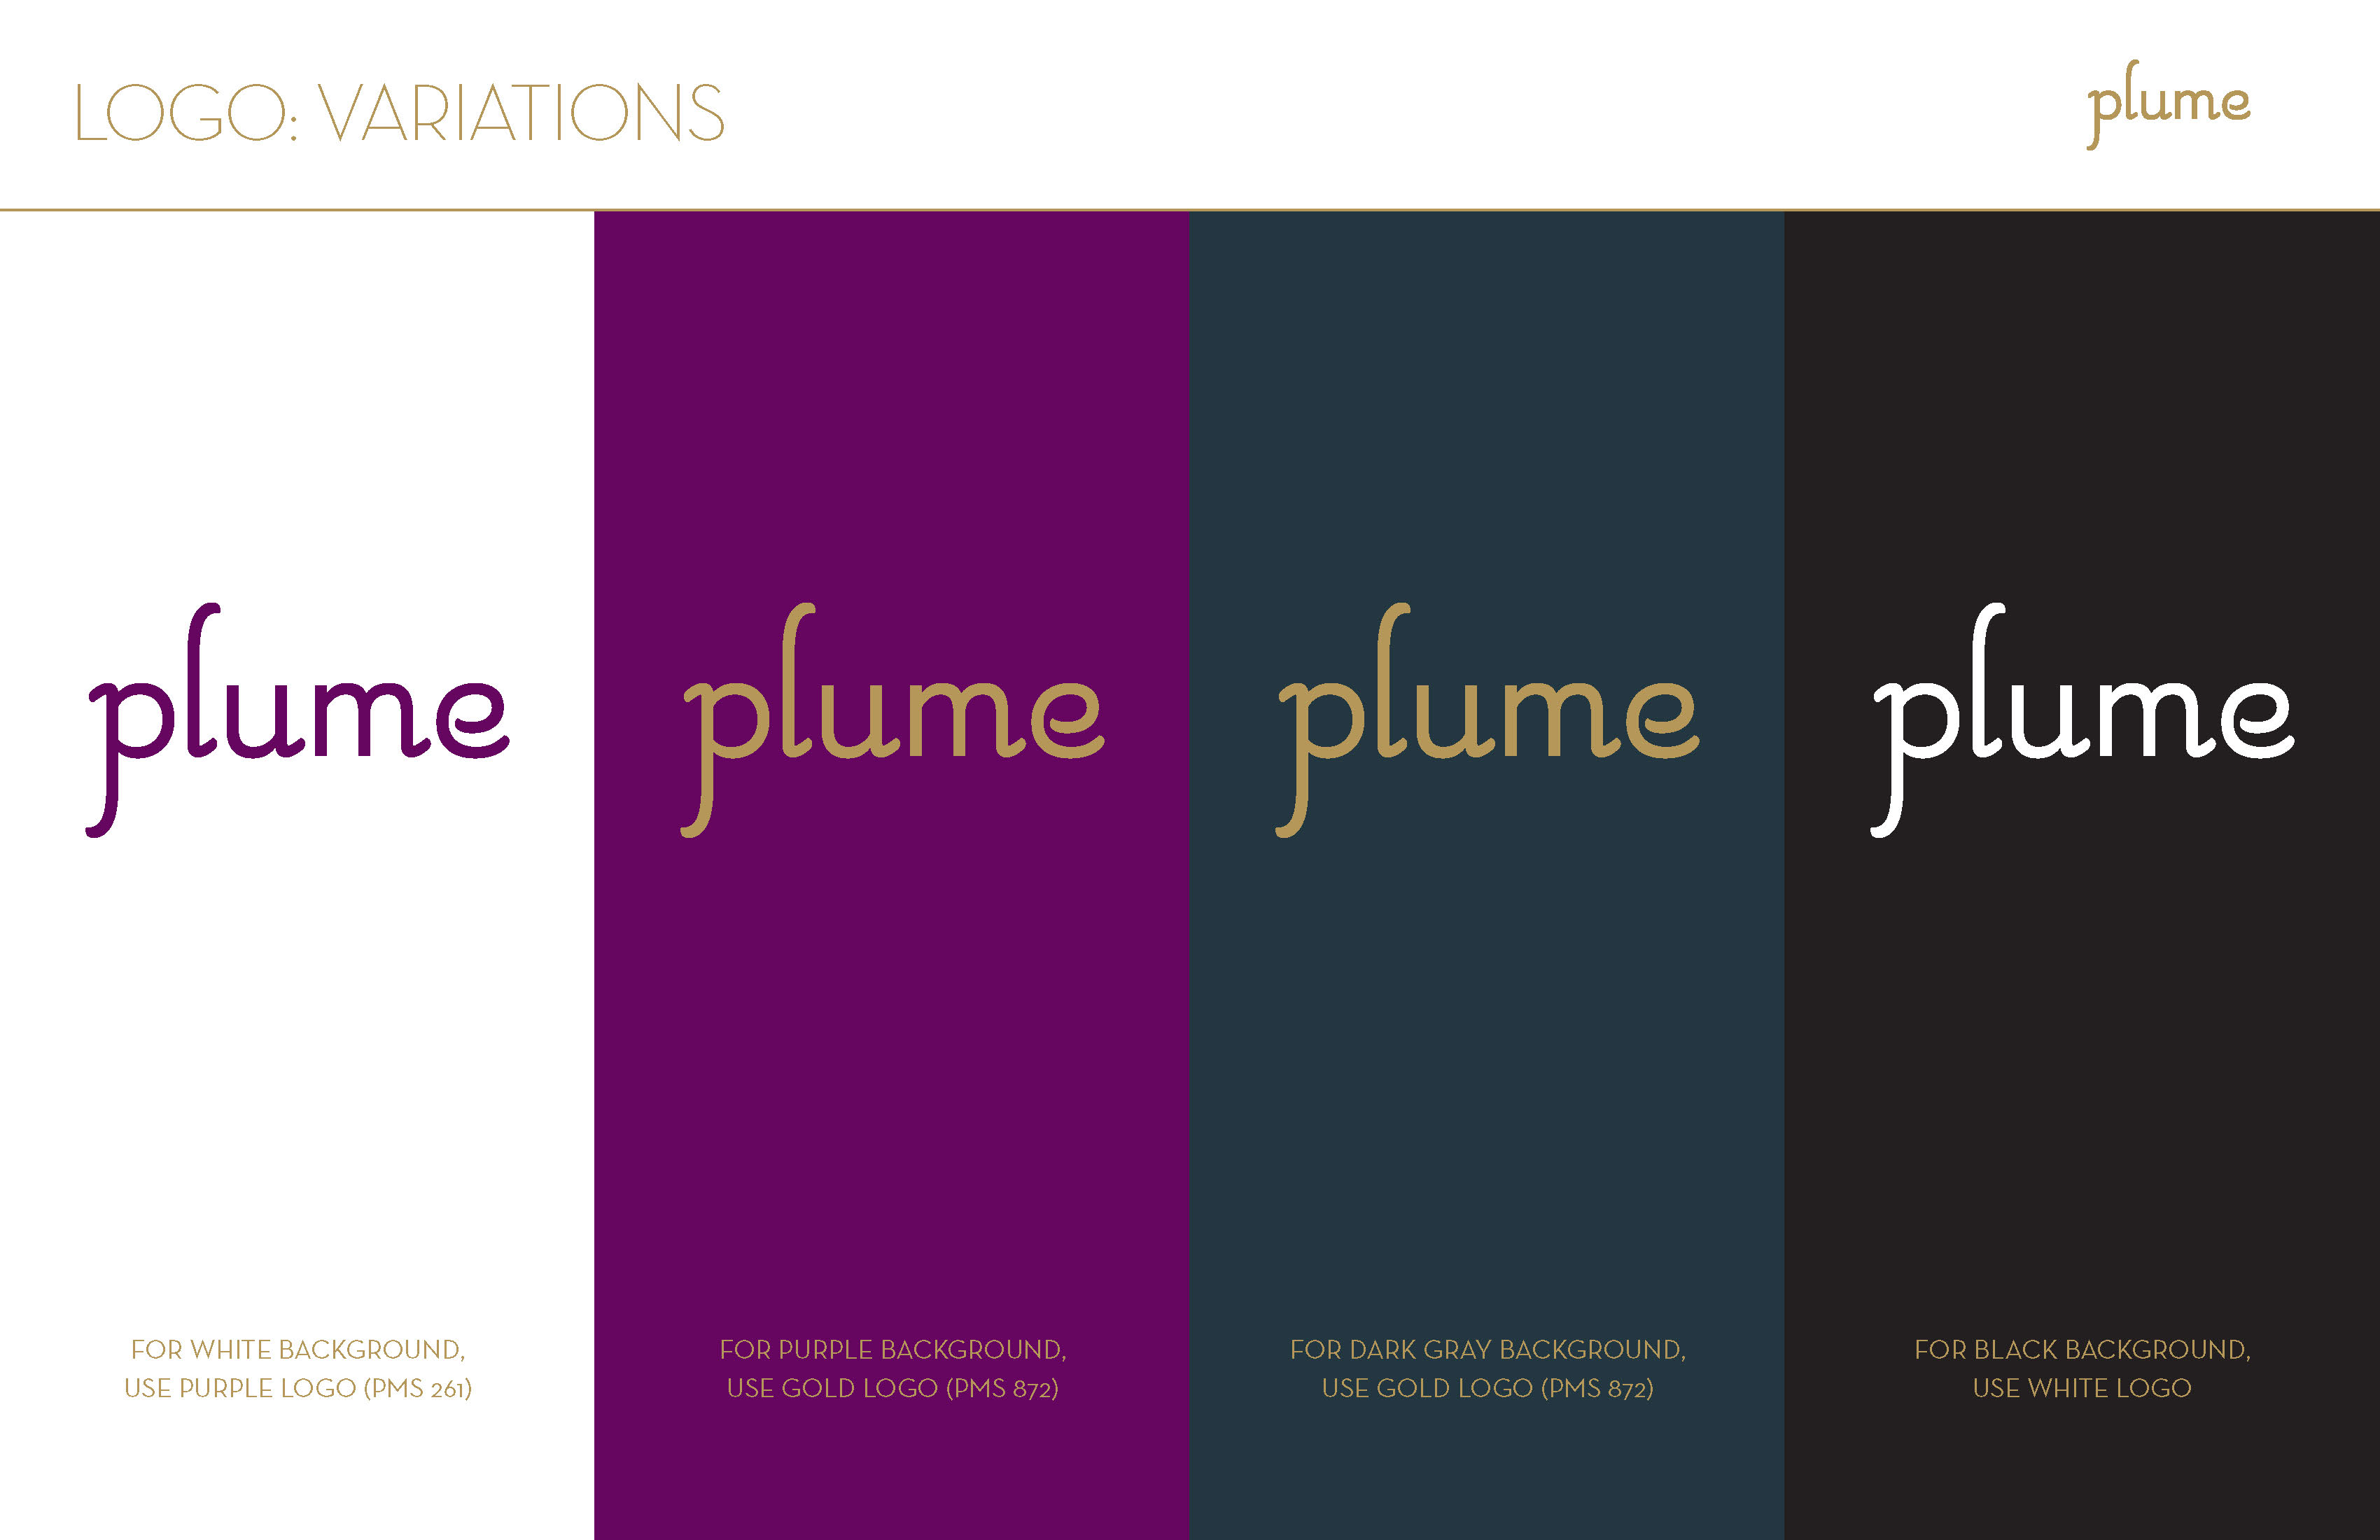 Plume Branding Guidelines Logo Variations